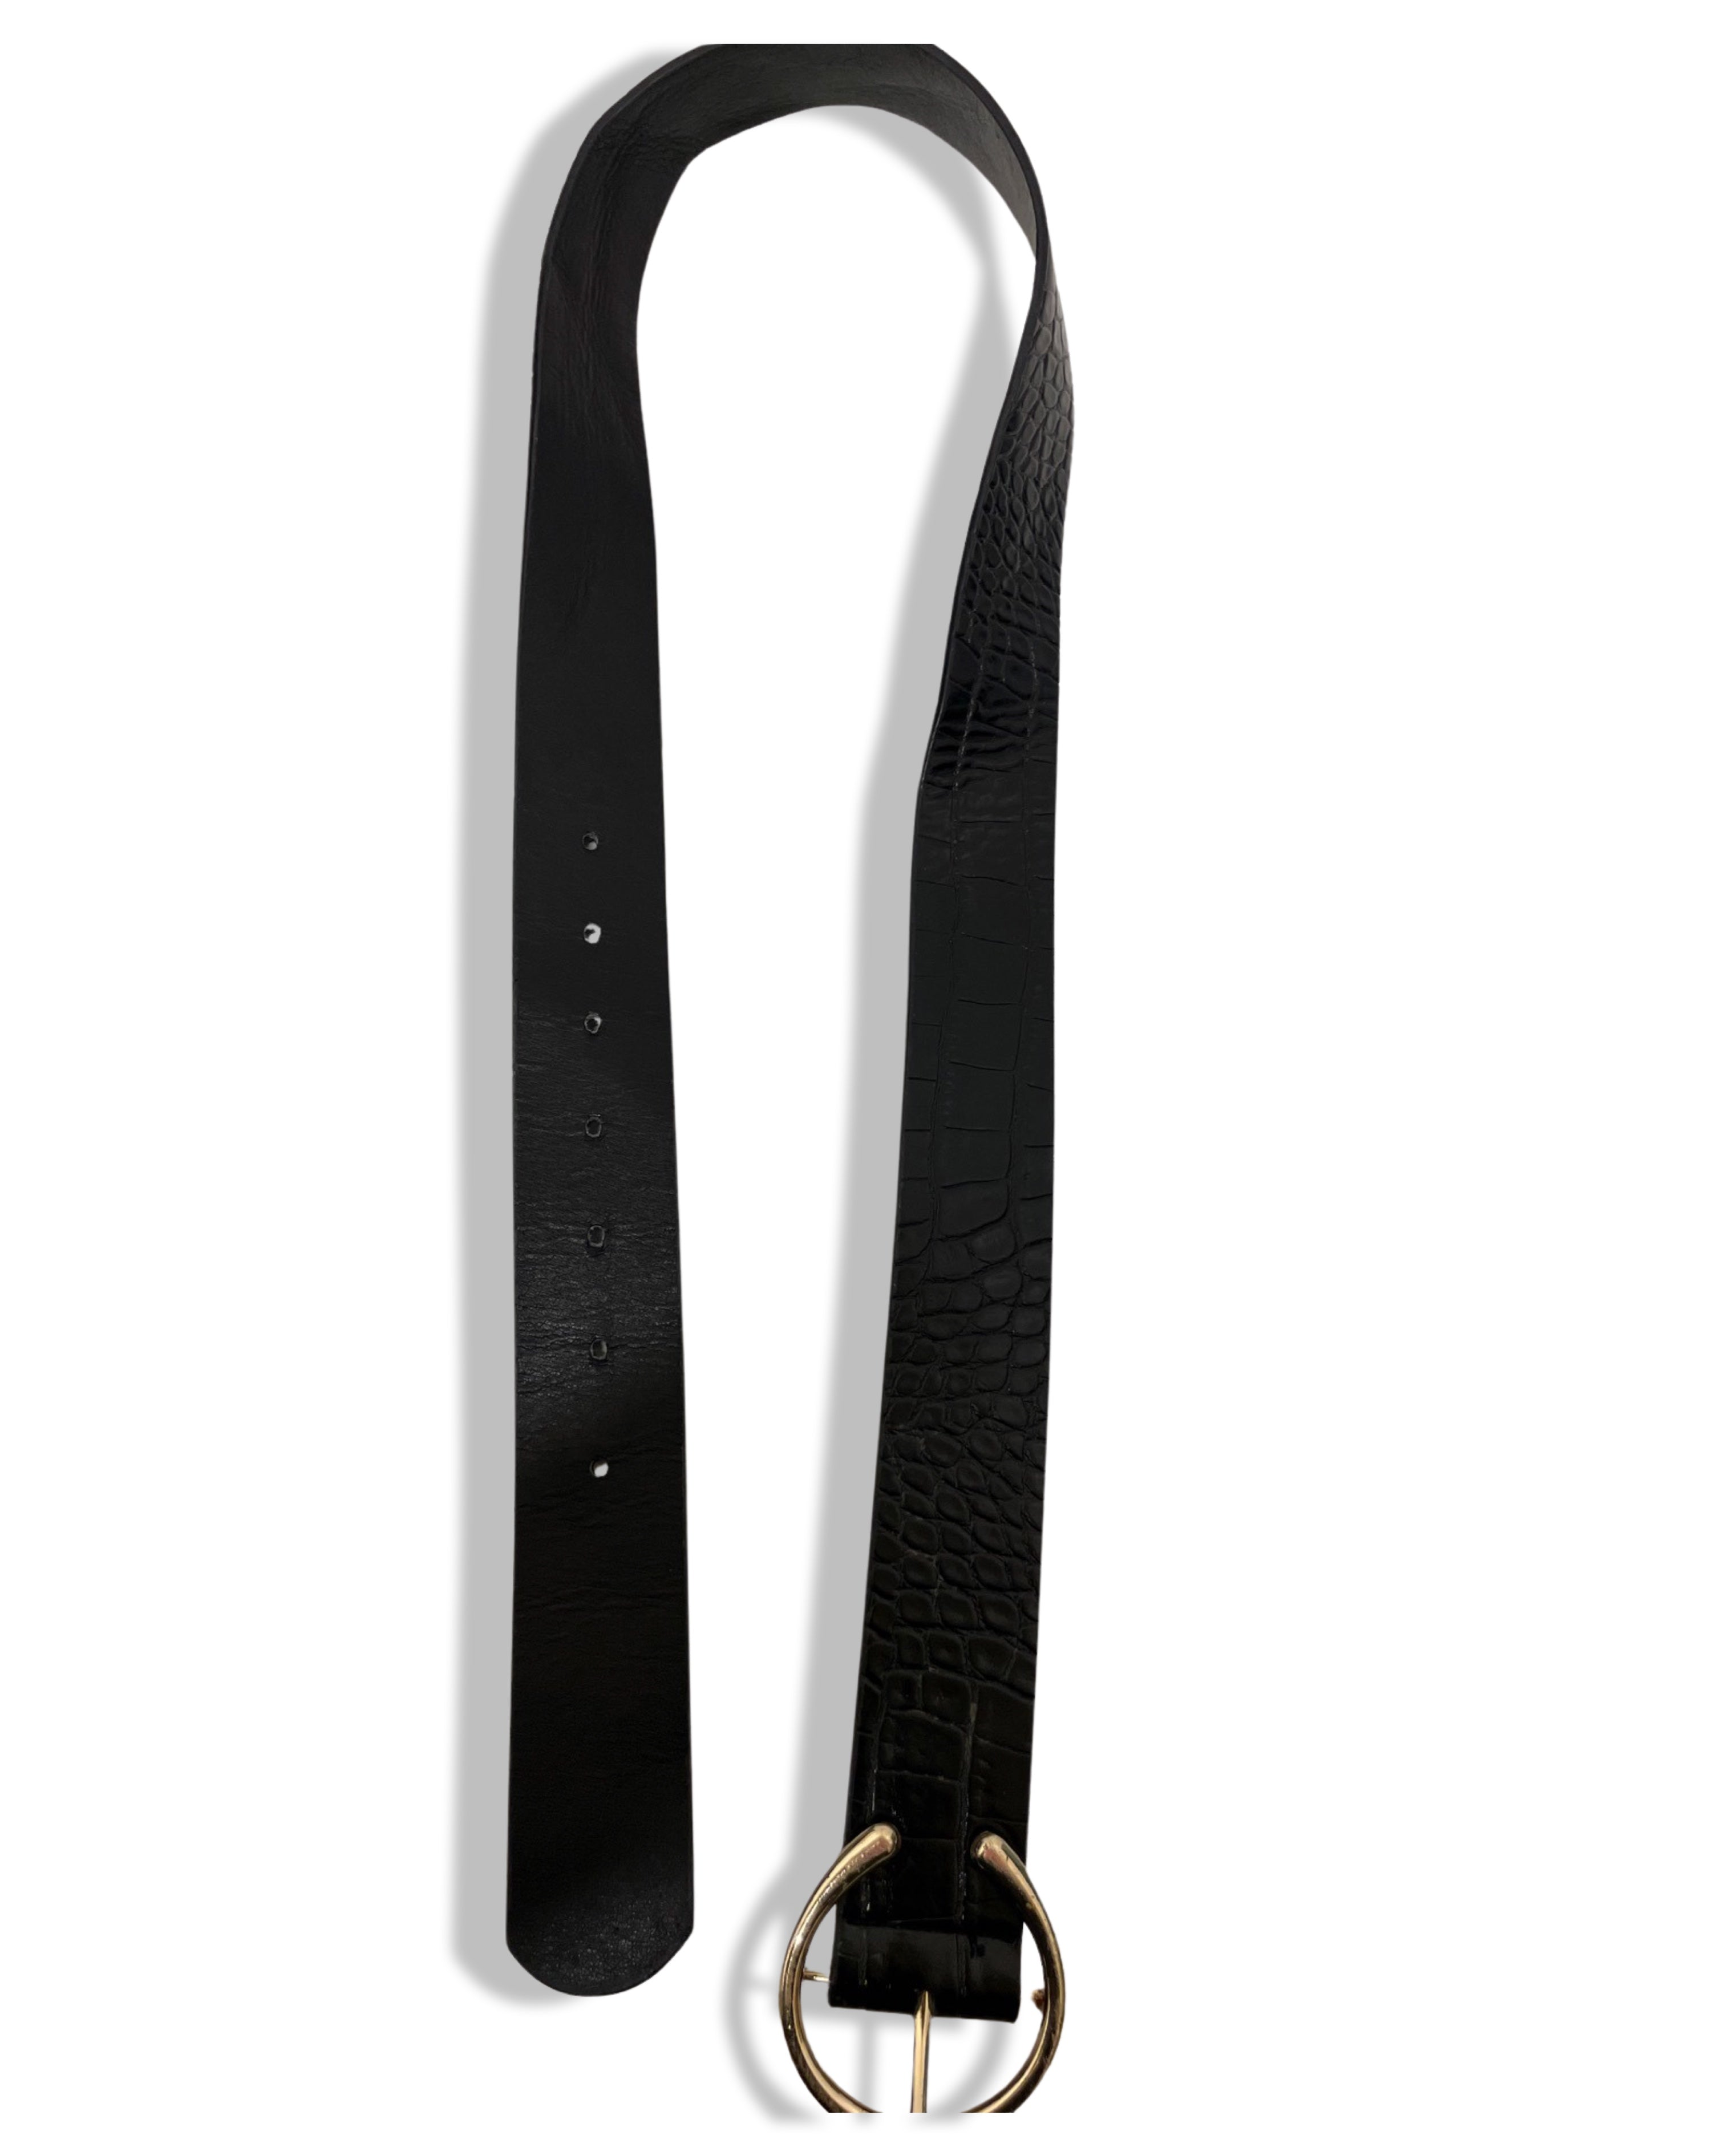 Vintage black faux leather buckle belt size M